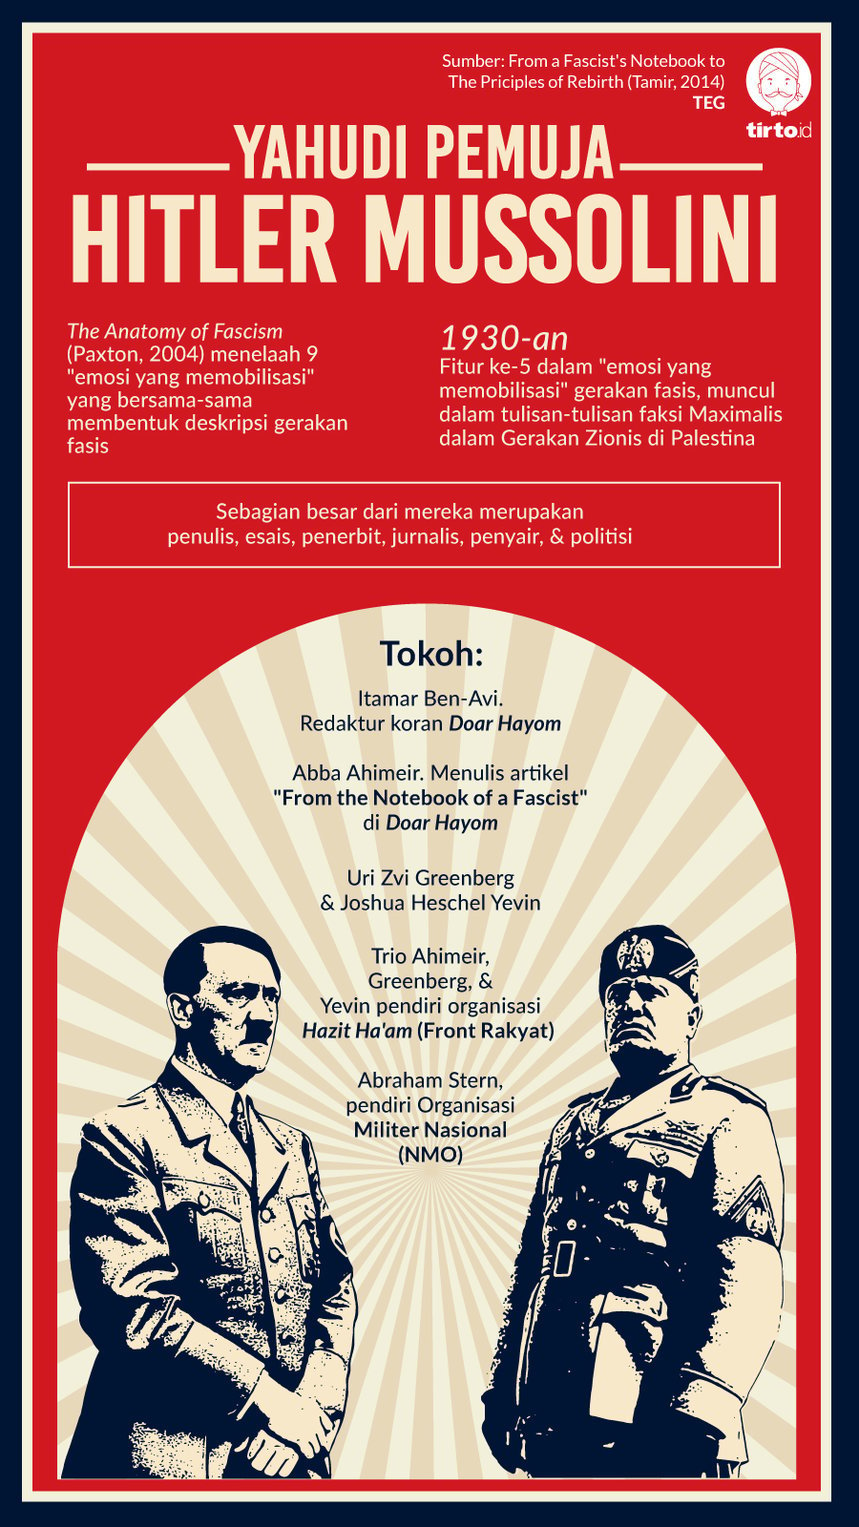 Infografik Yahudi Pemuja Hitler dan Mussolini